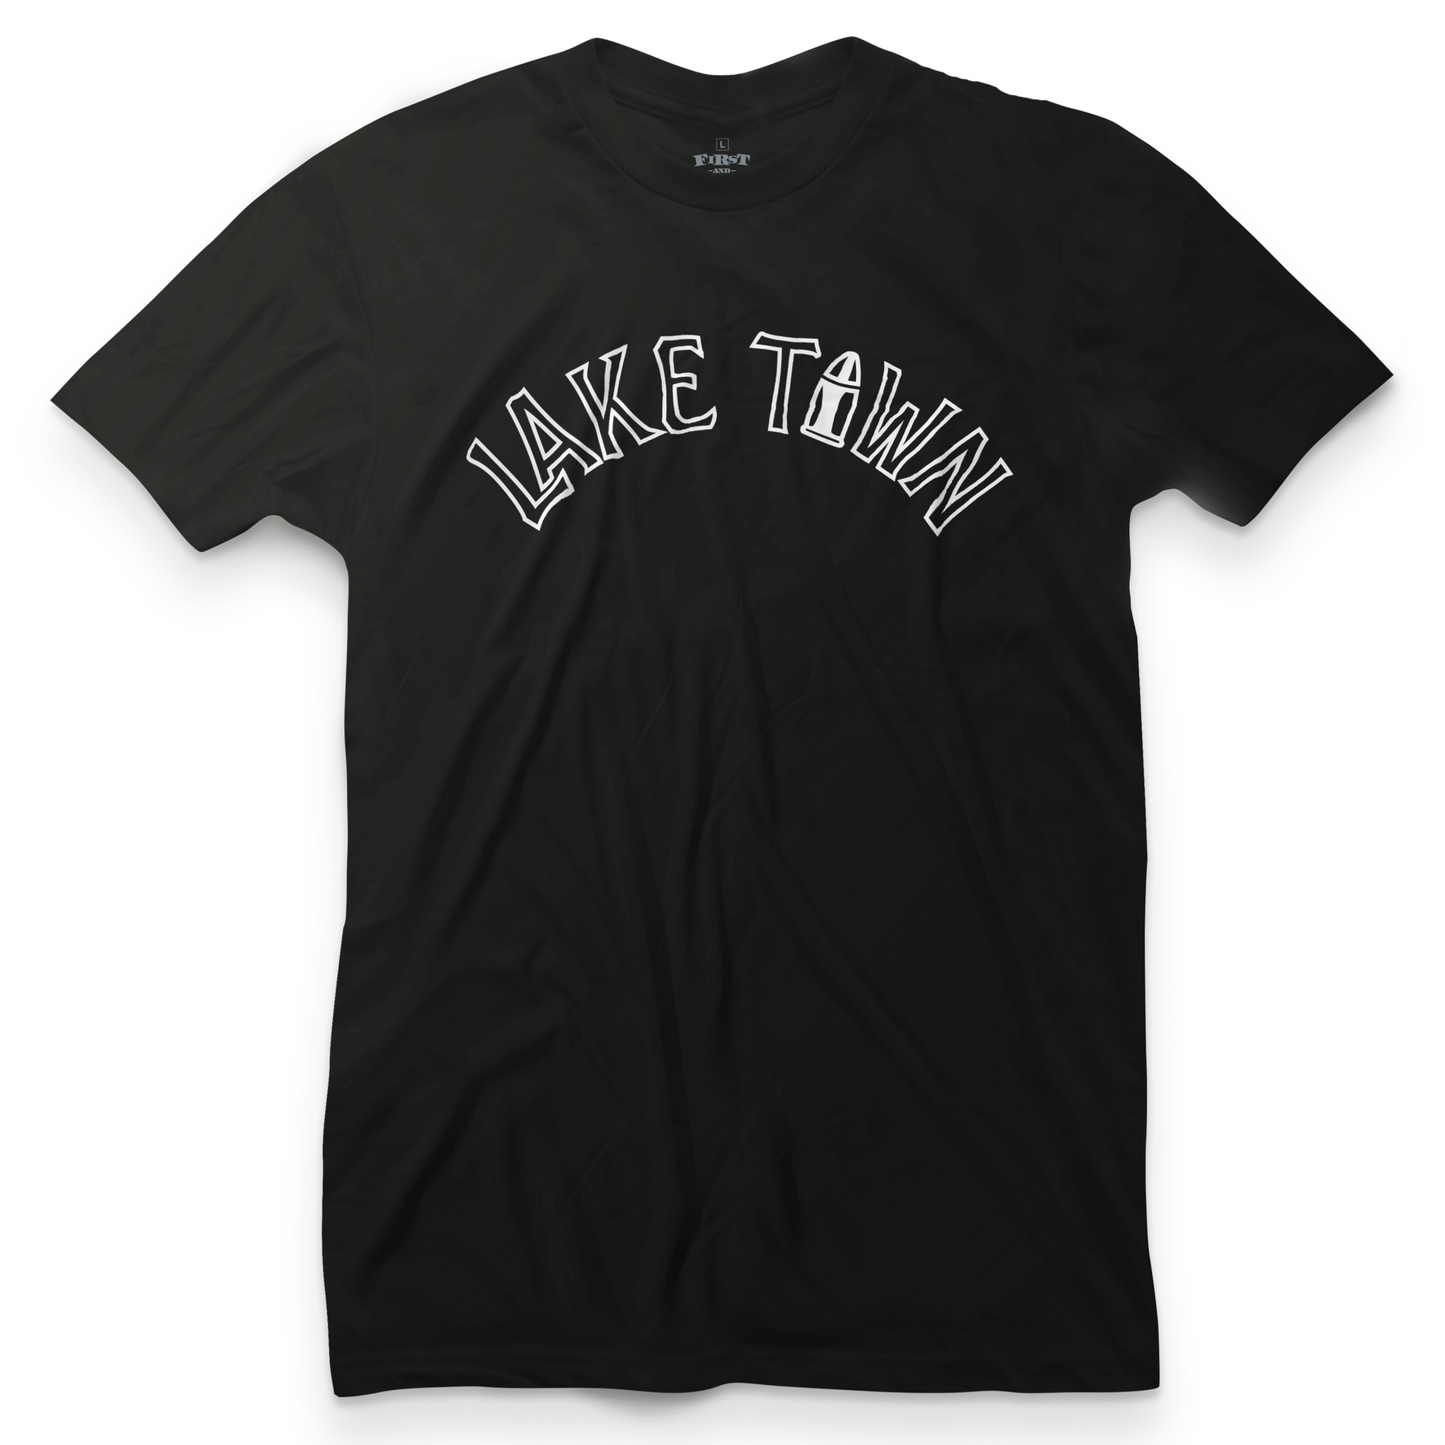 Lake Town Thug Life Tee